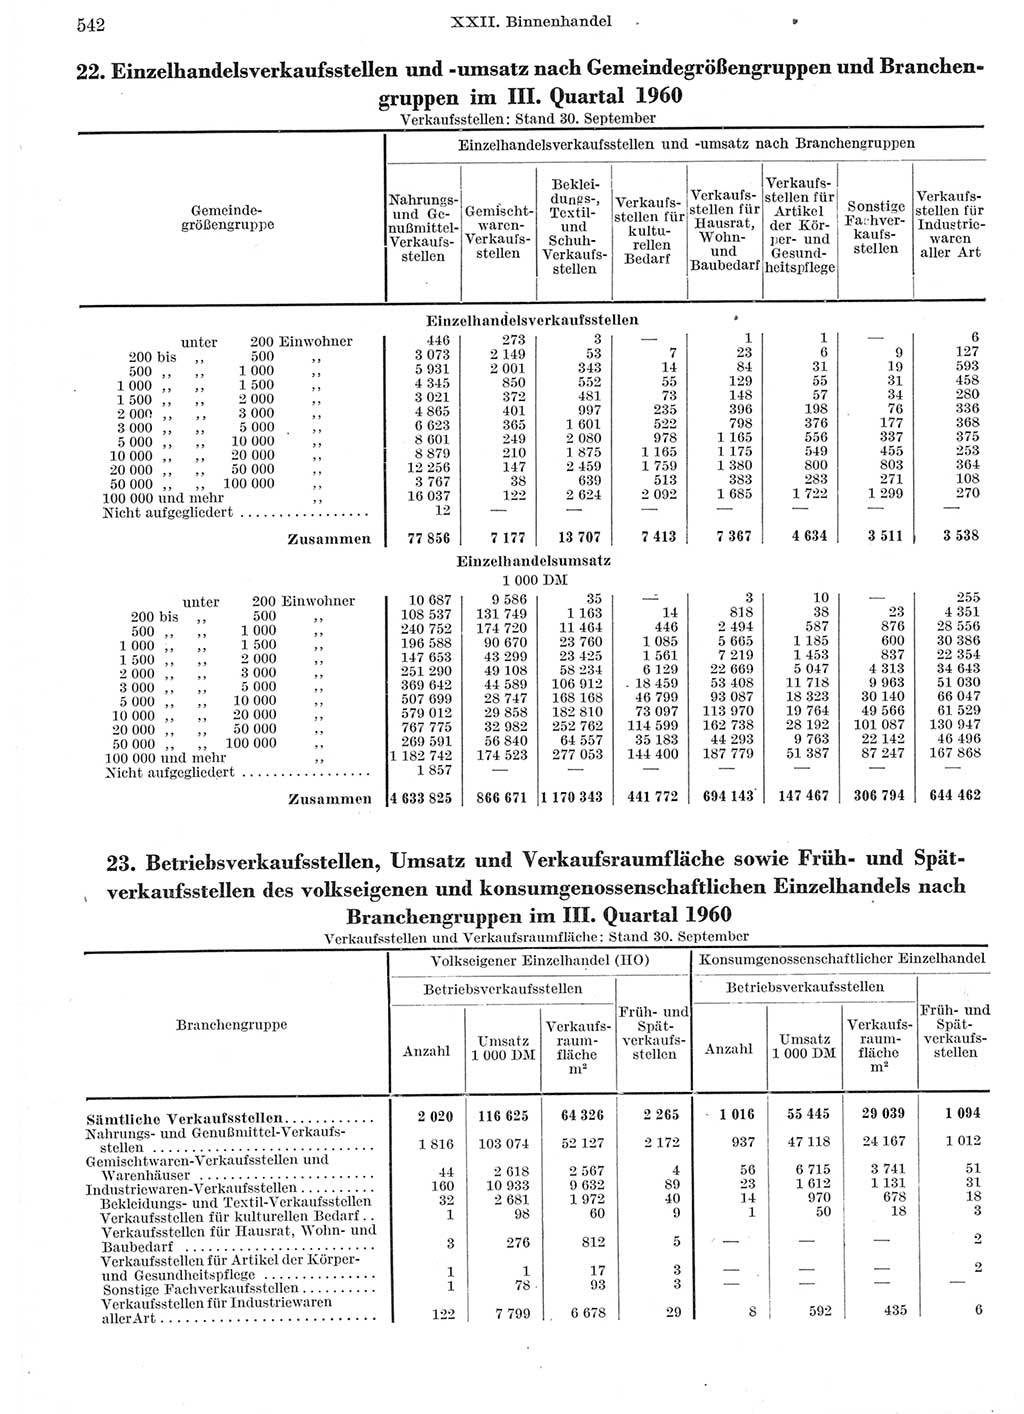 Statistisches Jahrbuch der Deutschen Demokratischen Republik (DDR) 1962, Seite 542 (Stat. Jb. DDR 1962, S. 542)